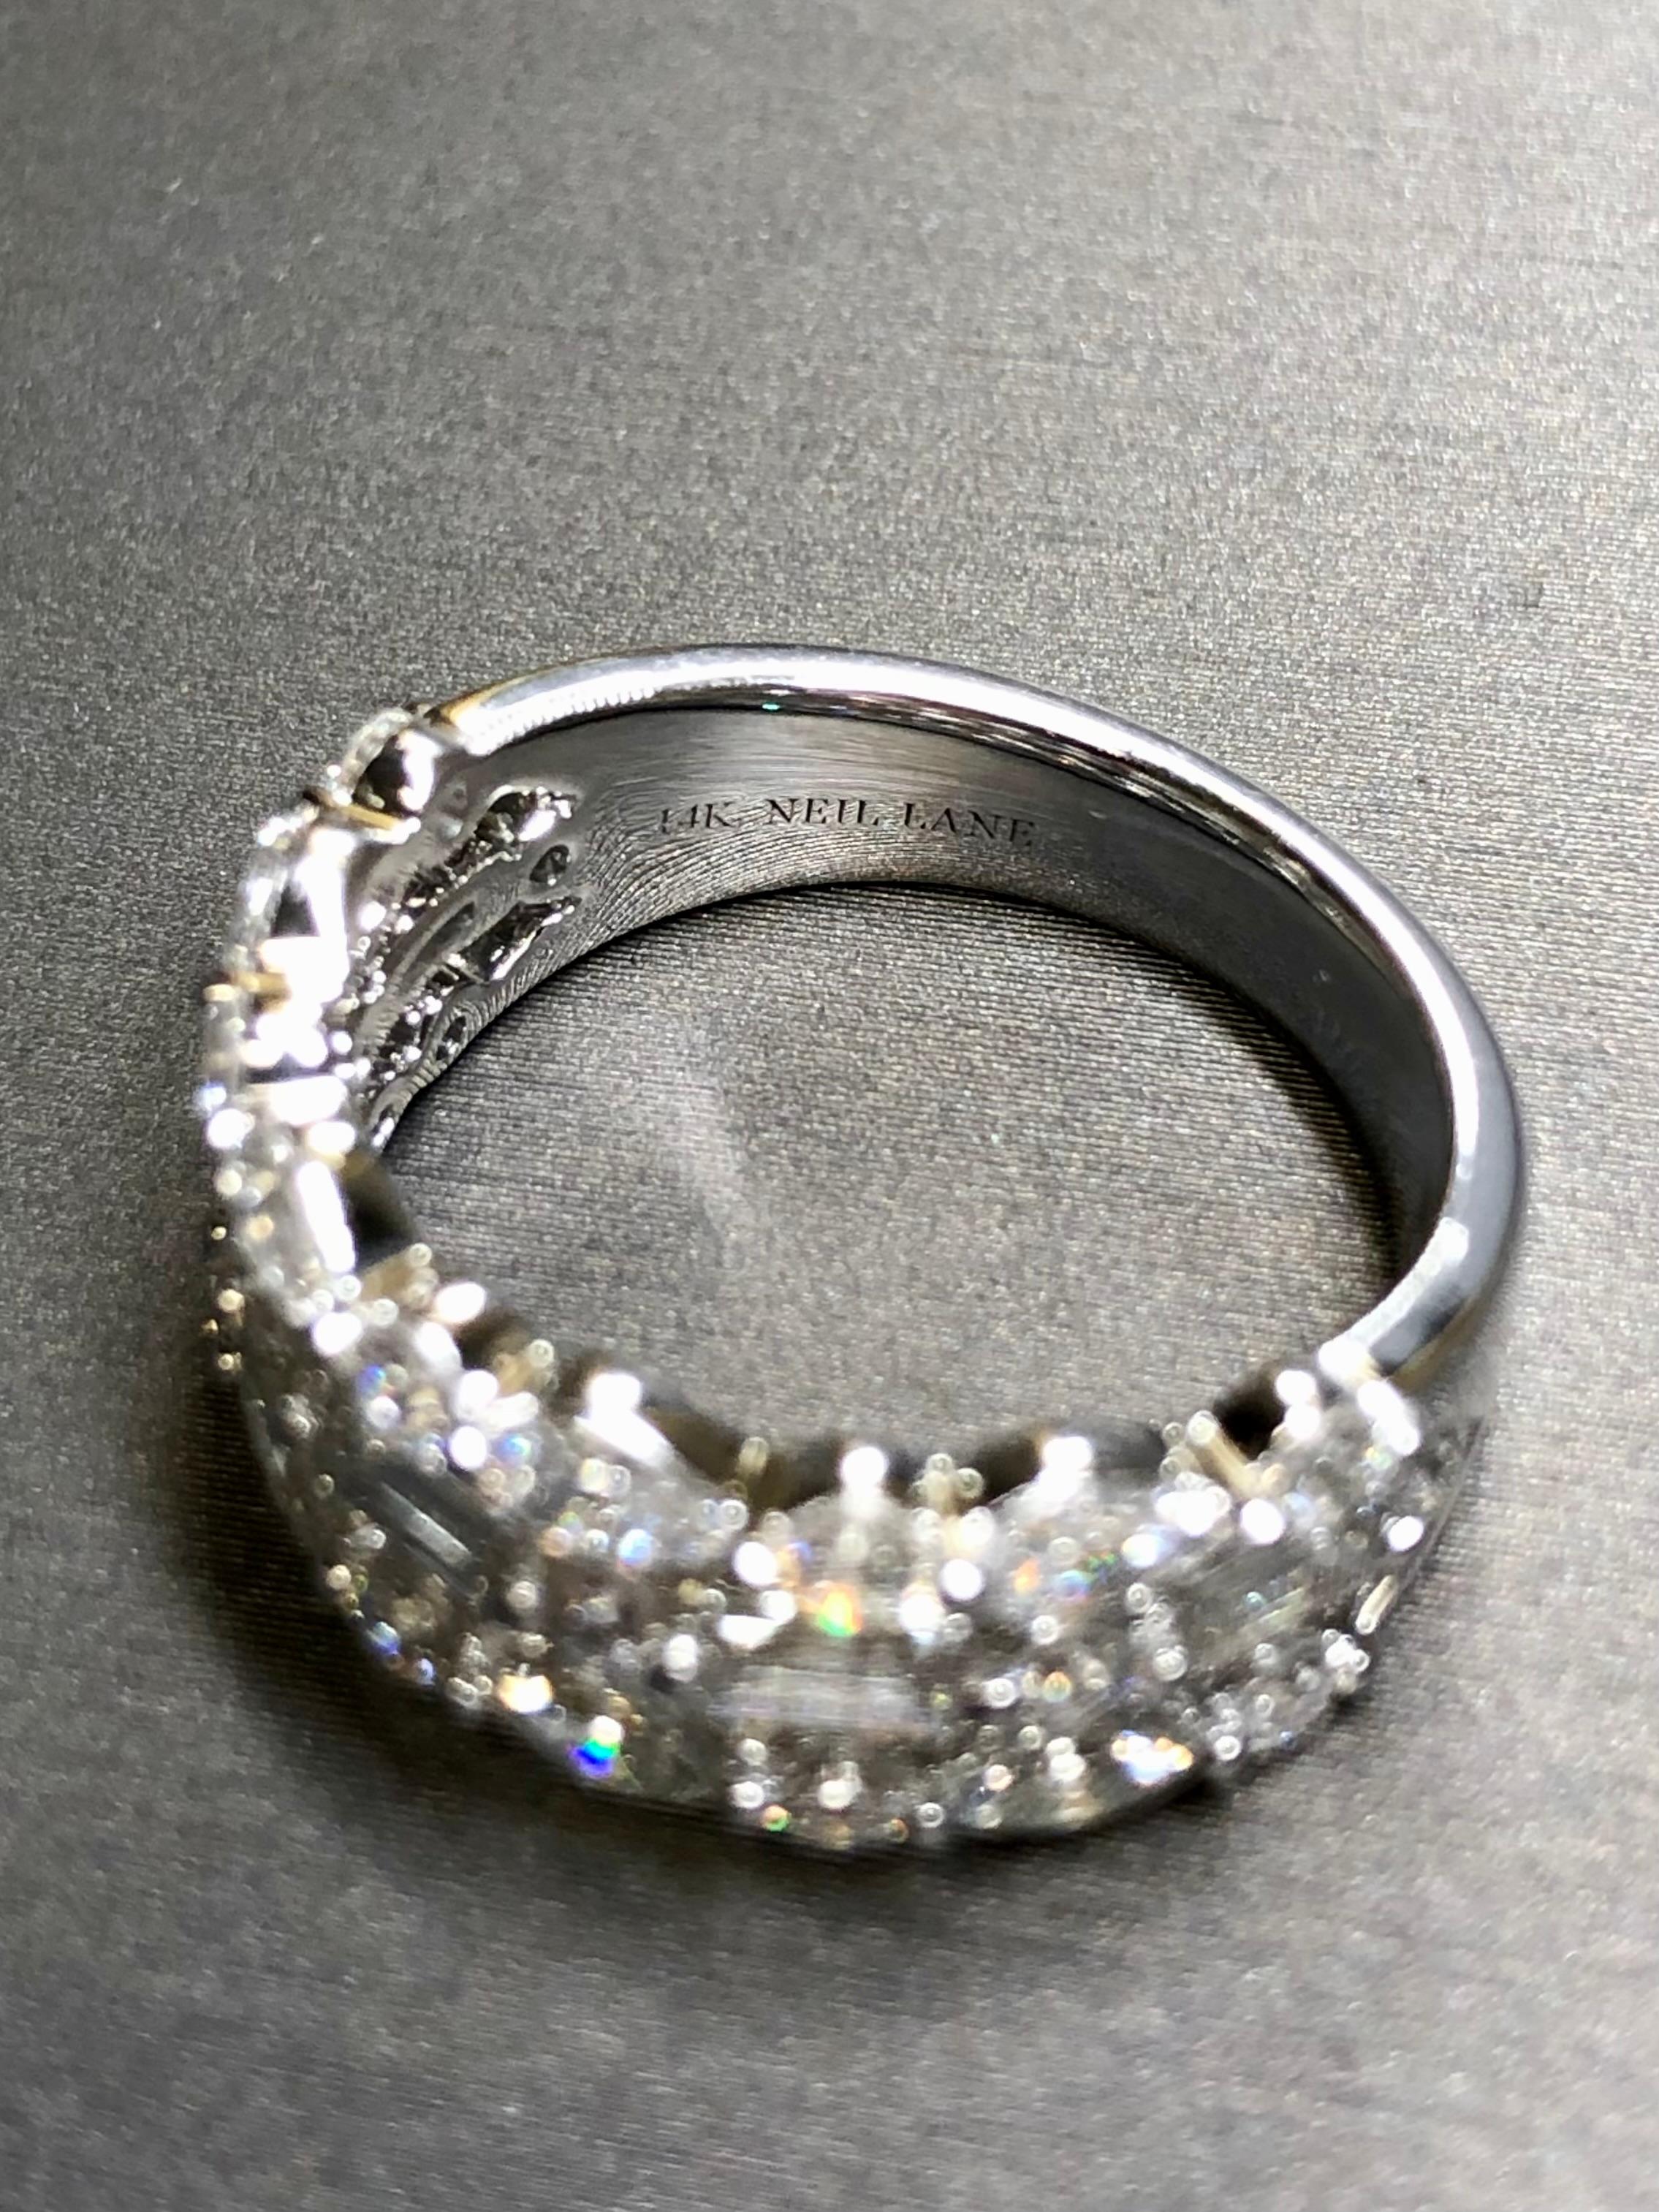 14K NEIL LANE Premiere Diamant Jahrestag-Ring 2cttw $6500 Einzelhandel Gr. 7 2